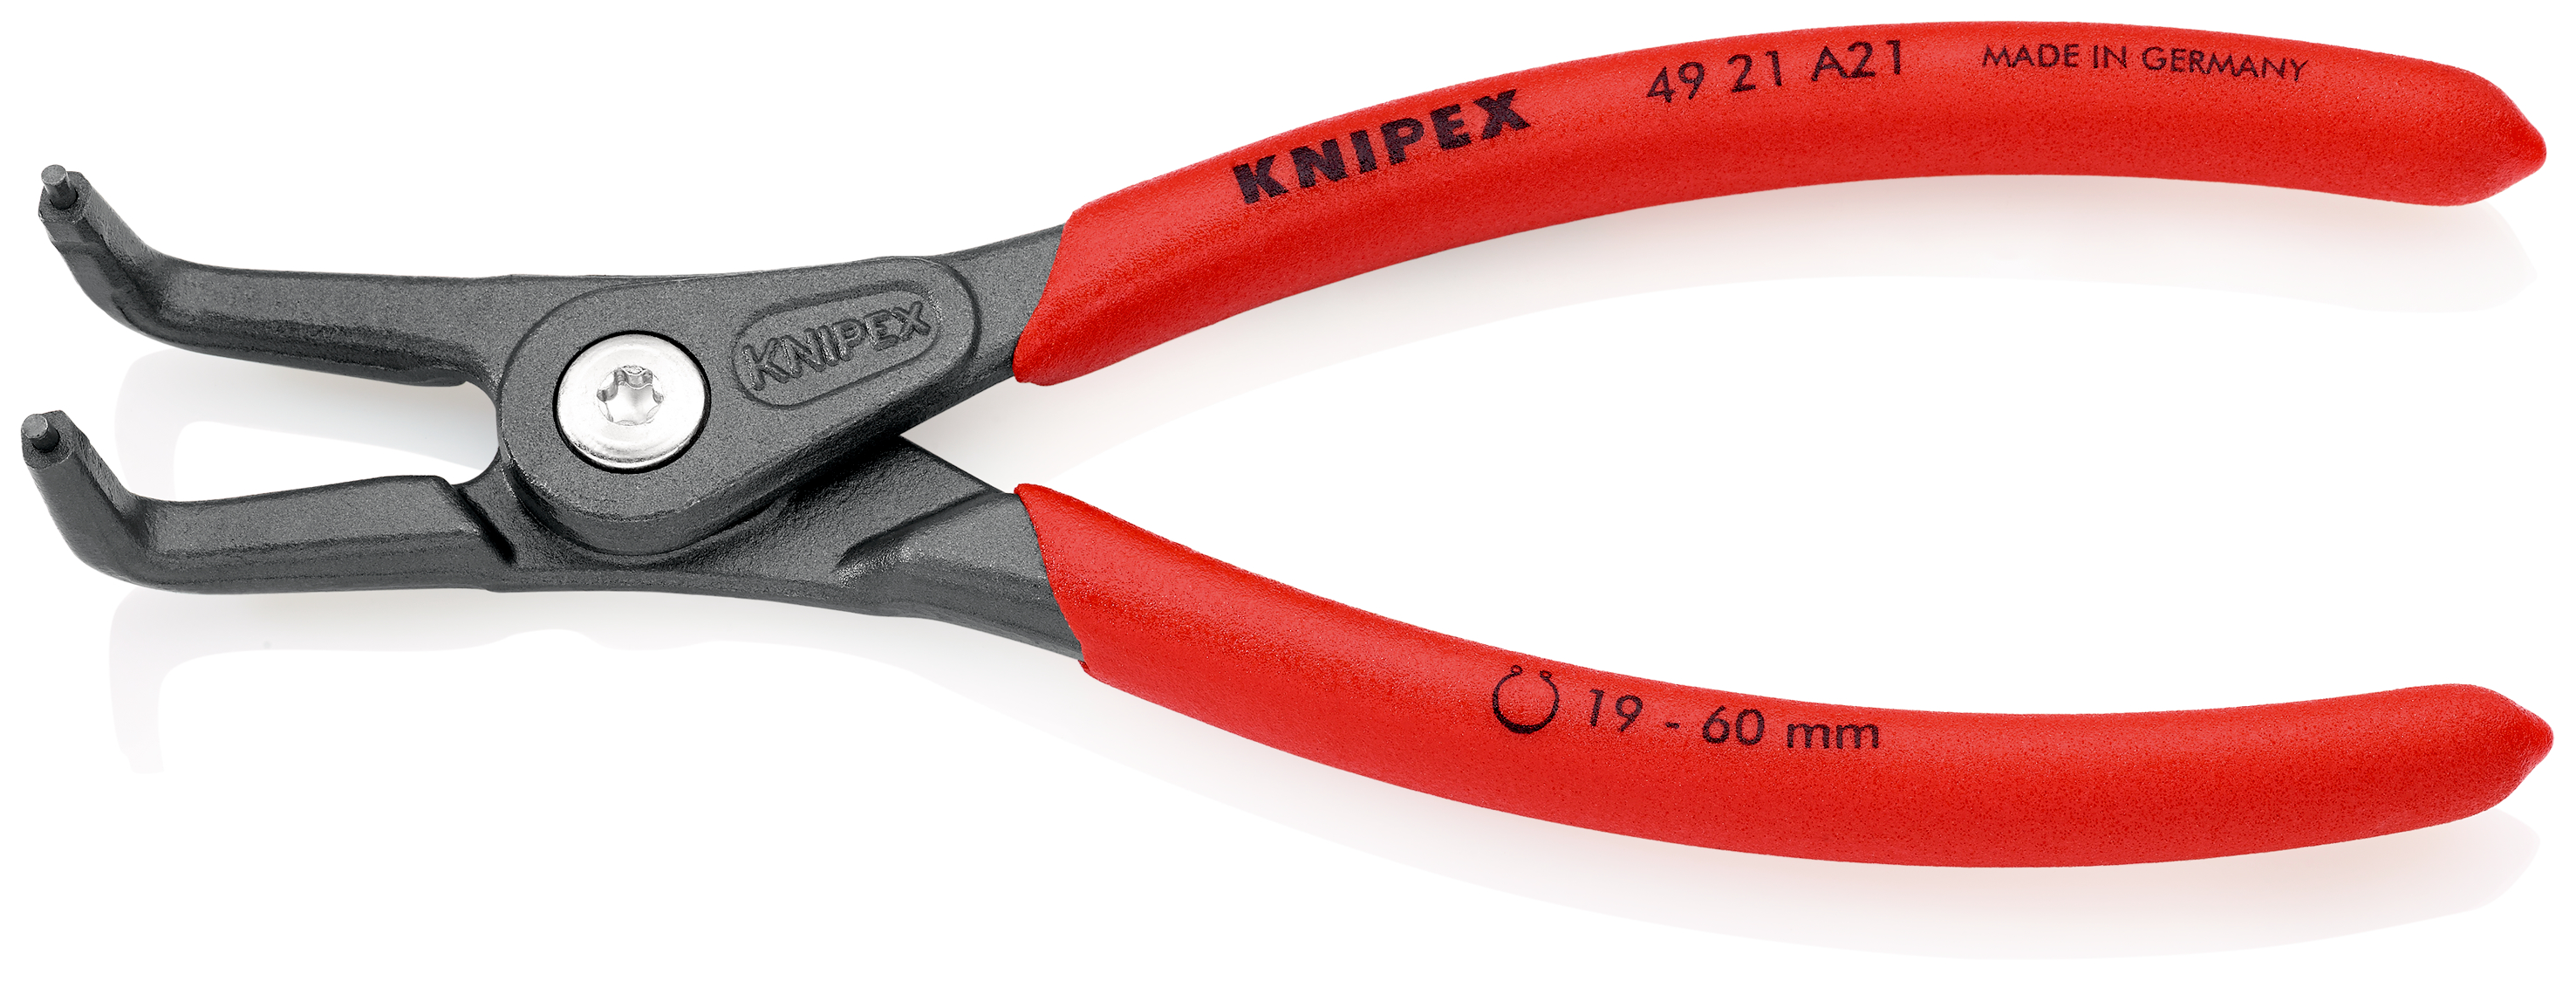 Knipex 4921A21 Cleste pentru inele de siguranță de interior, lungime 165 mm